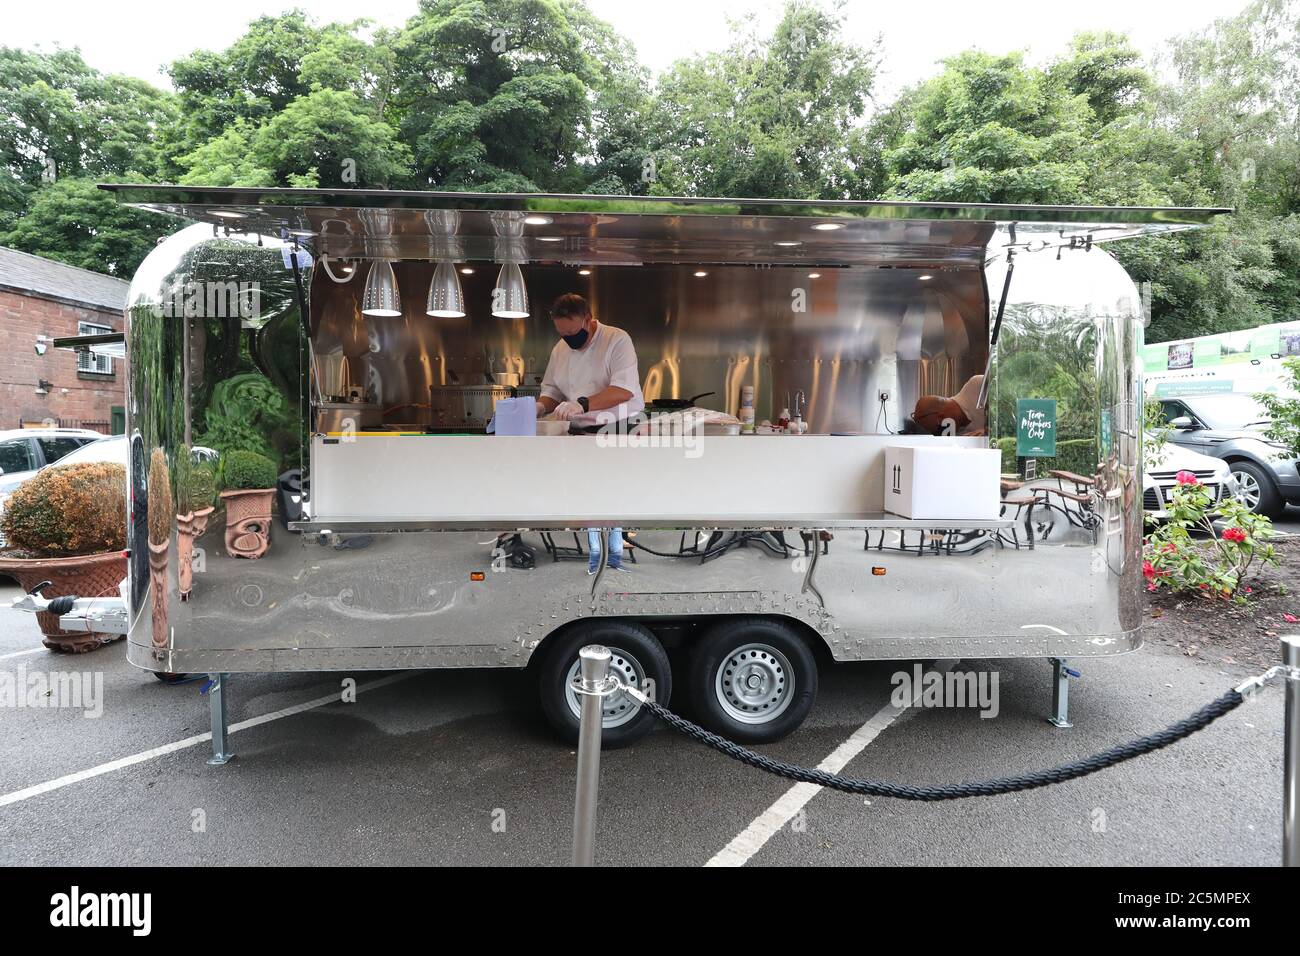 Il cibo viene preparato nel nuovo furgone mobile per il catering durante la riapertura dell'Old Stables Restaurant presso l'Allerton Manor Golf Club, Liverpool, in quanto le restrizioni di blocco del coronavirus sono attenuate in tutta l'Inghilterra. Foto Stock